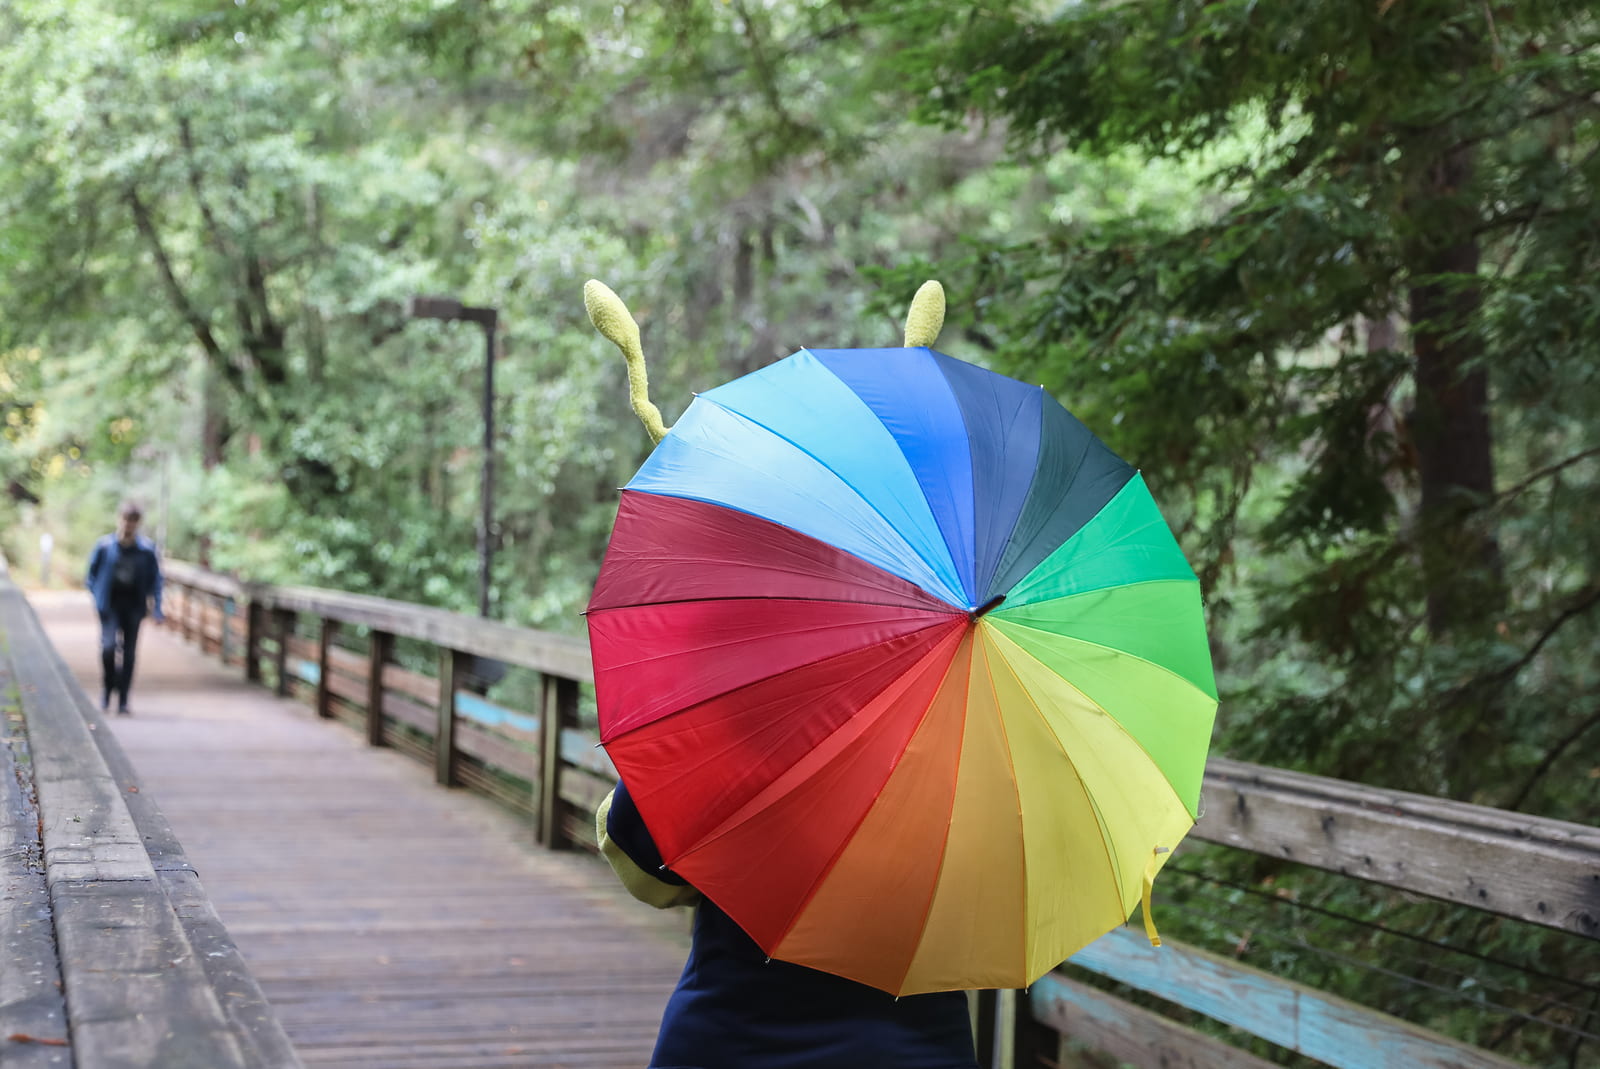 Sammy the slug walking on a board walk with a rainbow umbrella